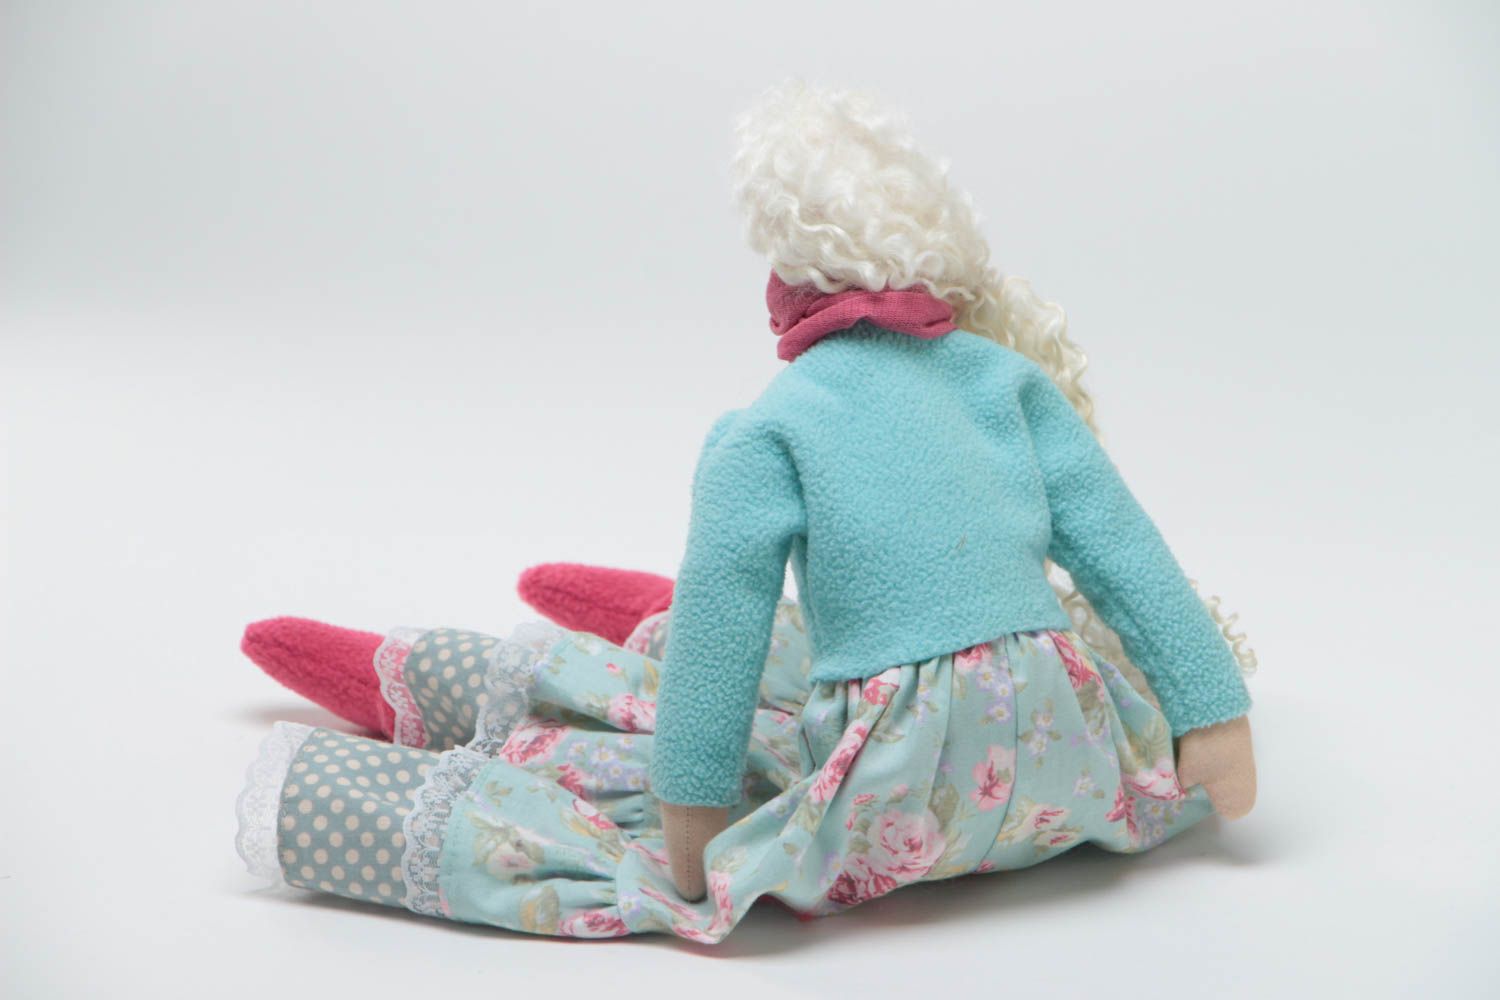 Игрушка кукла из ткани в голубом платье с белыми волосами красивая ручной работы фото 4